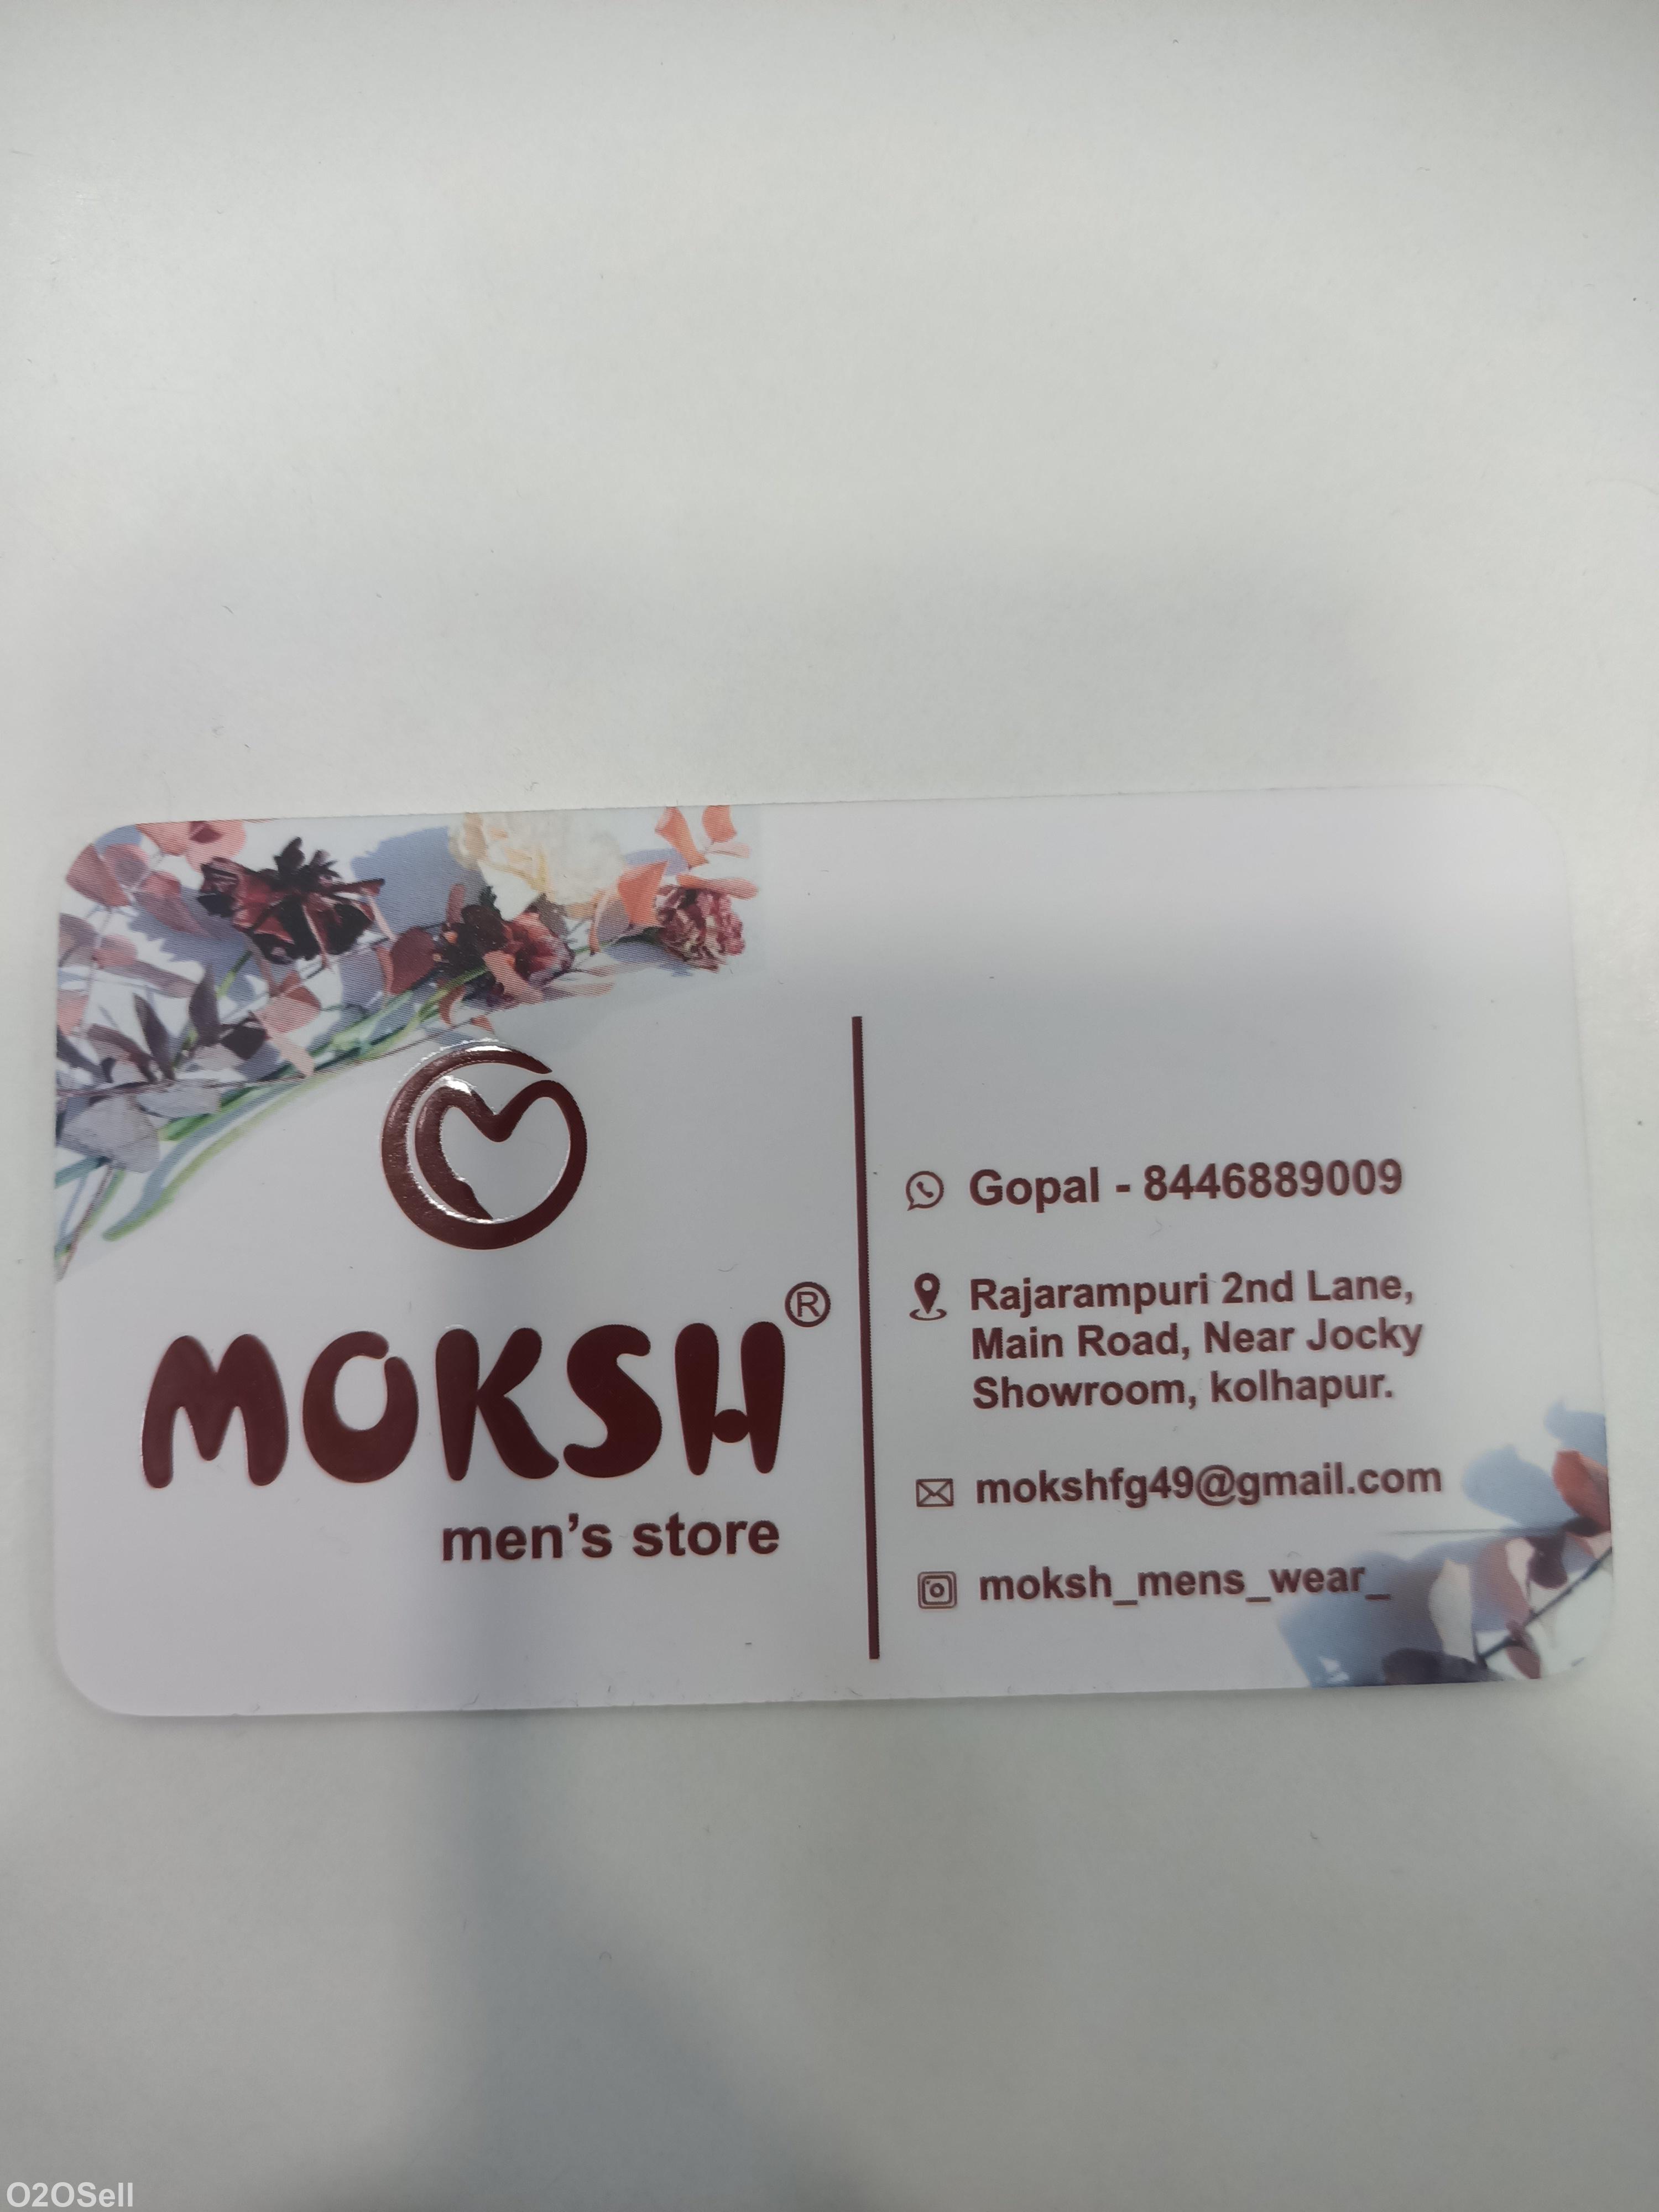 Moksh men's store  - Profile Image